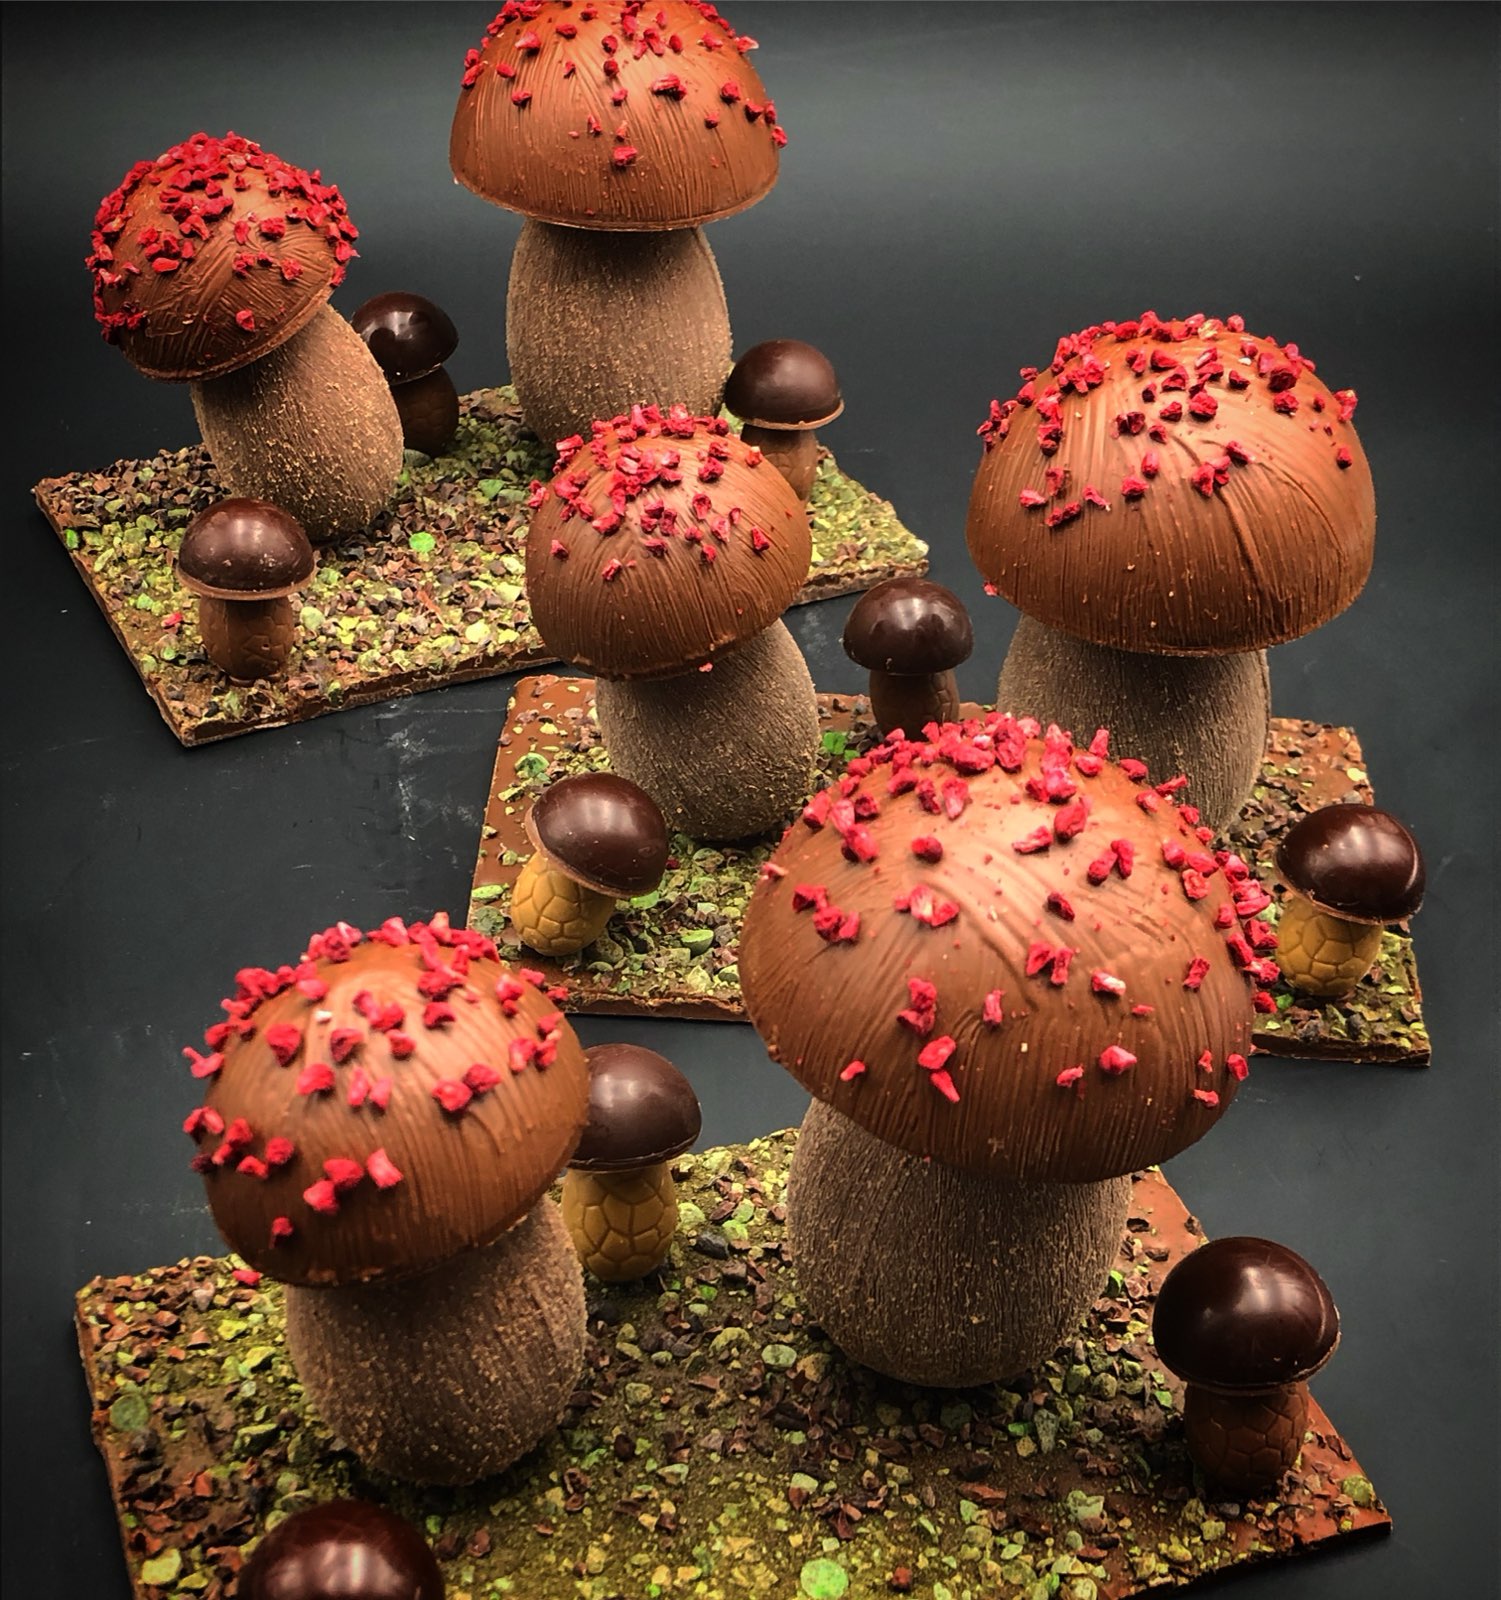 Composition champignons en chocolat L'Automnal gourmand ©DominiqueRiou IMG_40831